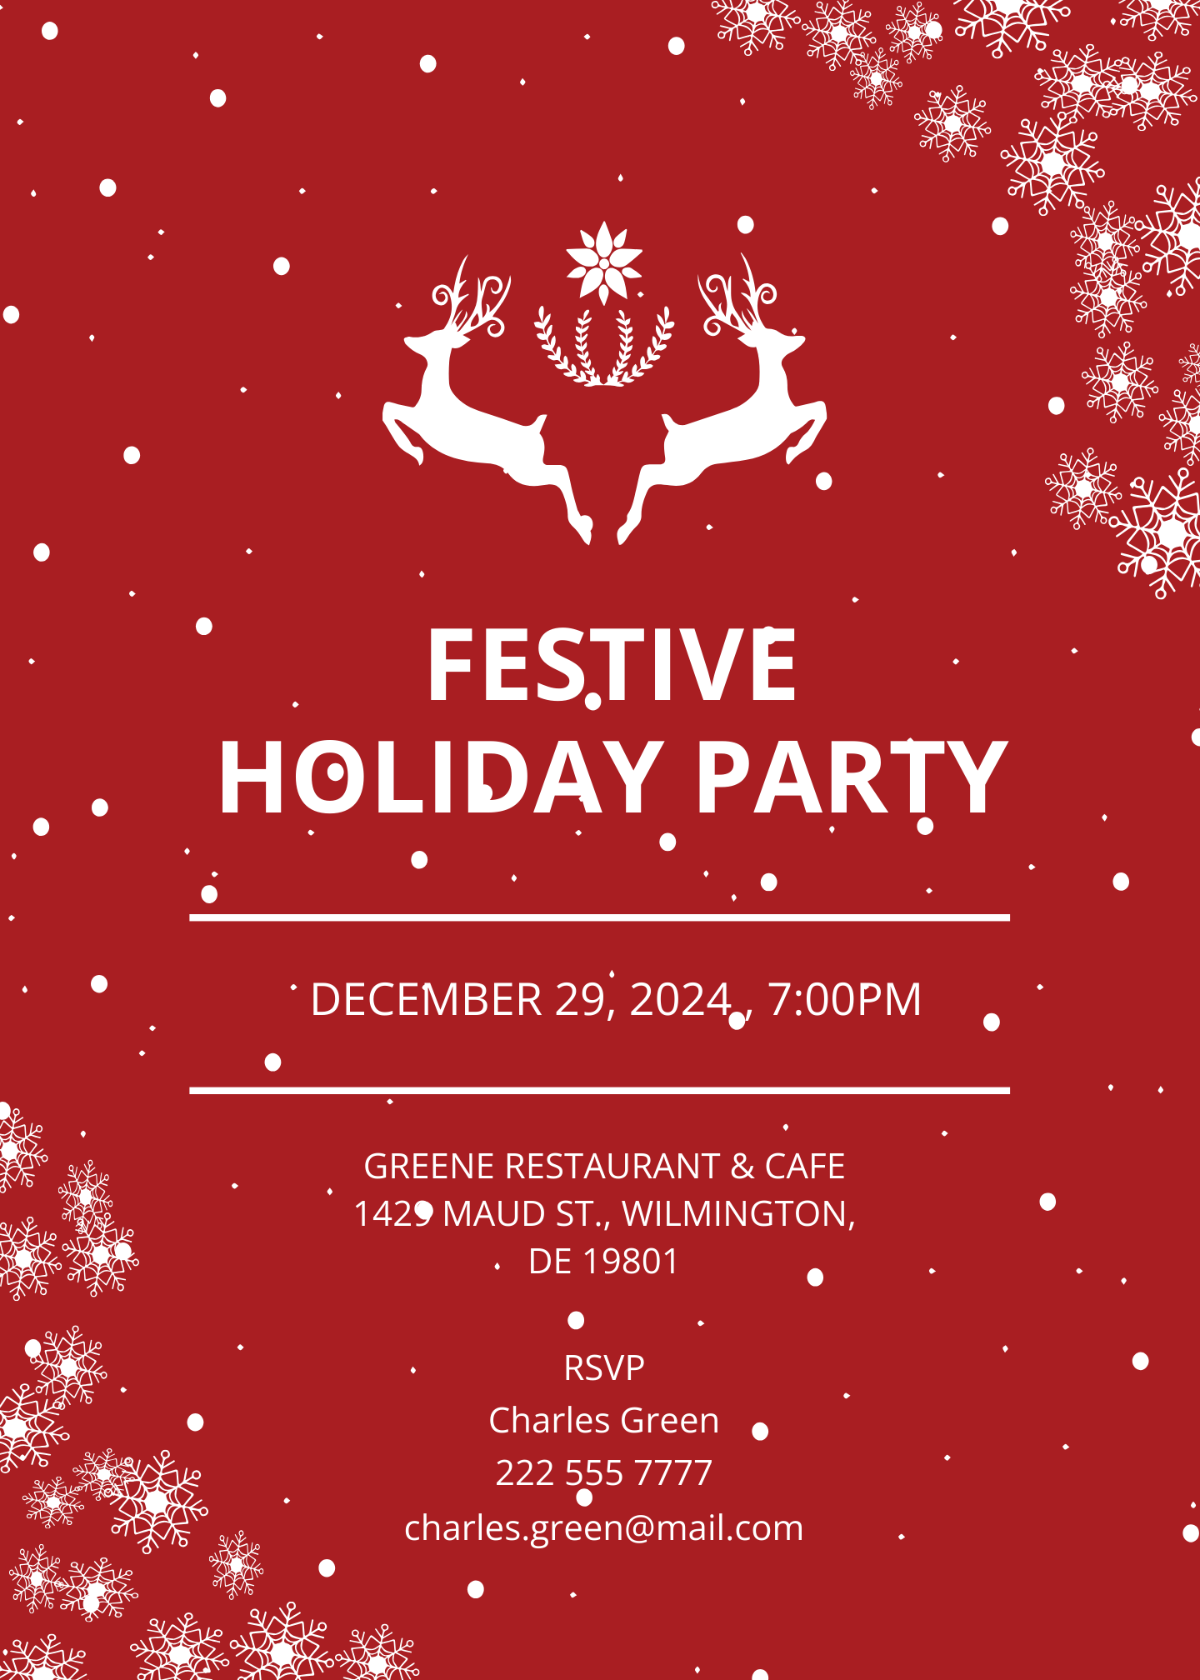 Festive Holiday Party Invitation